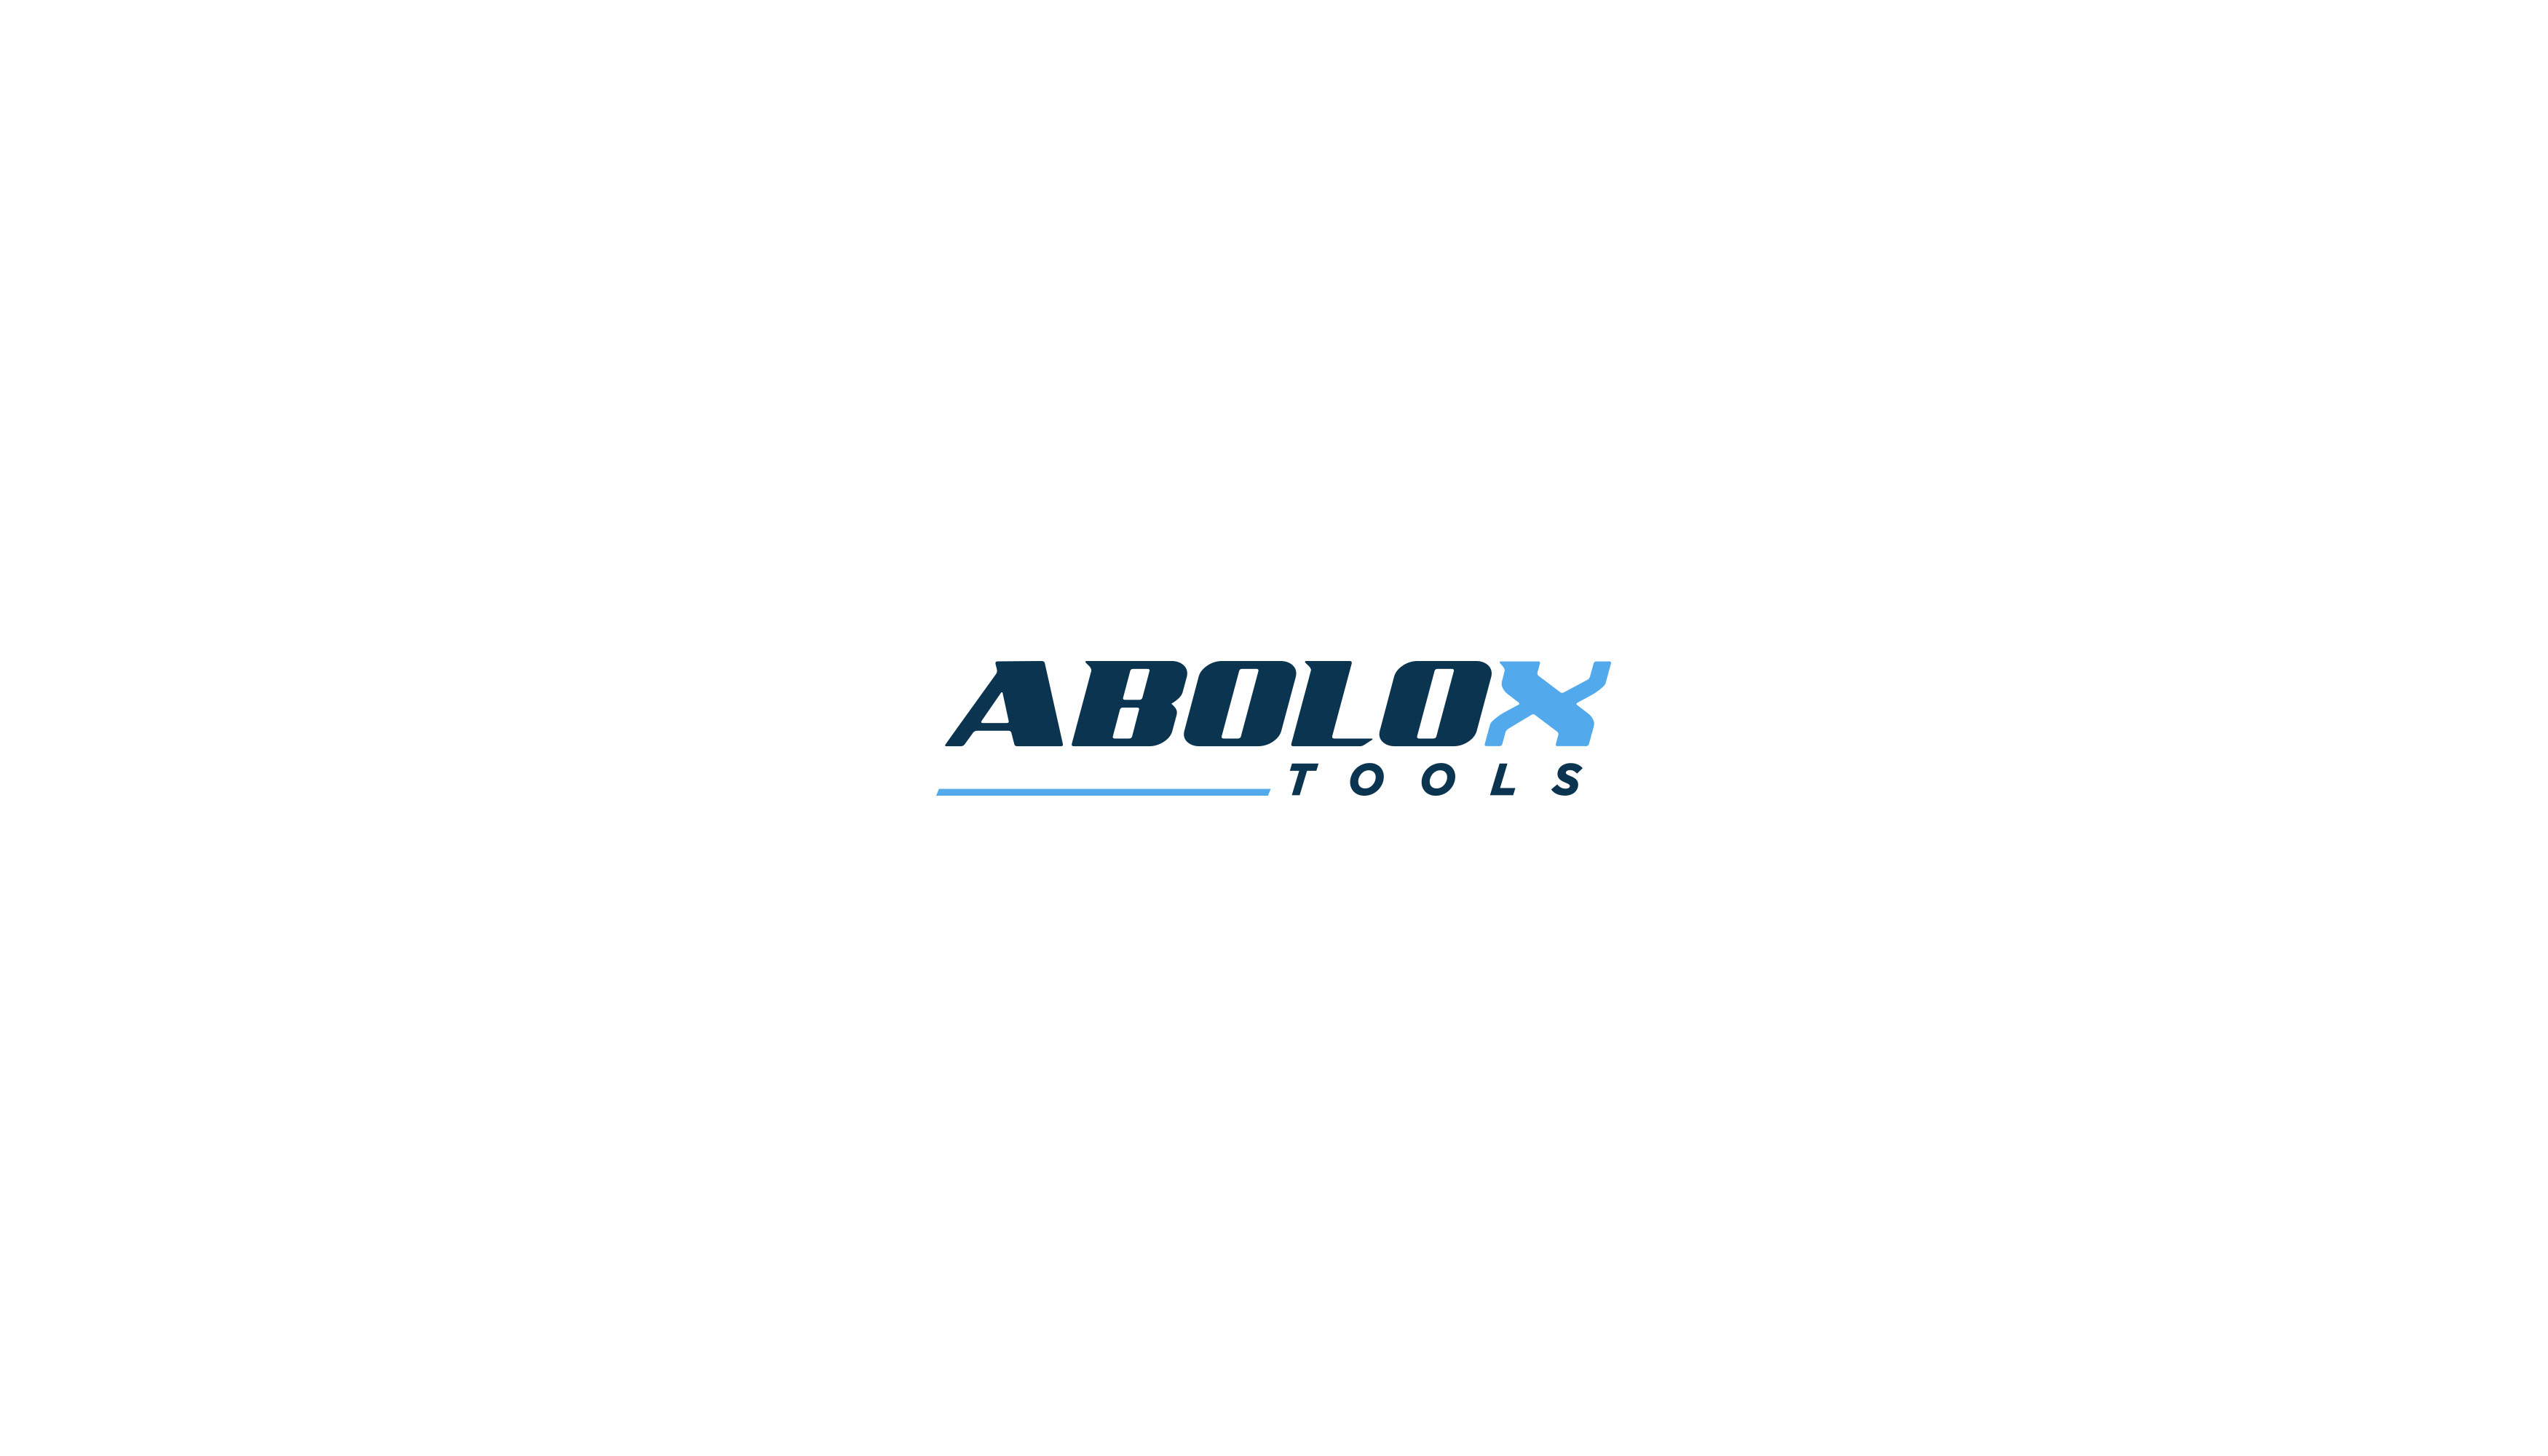 Abolox Tools Design #1